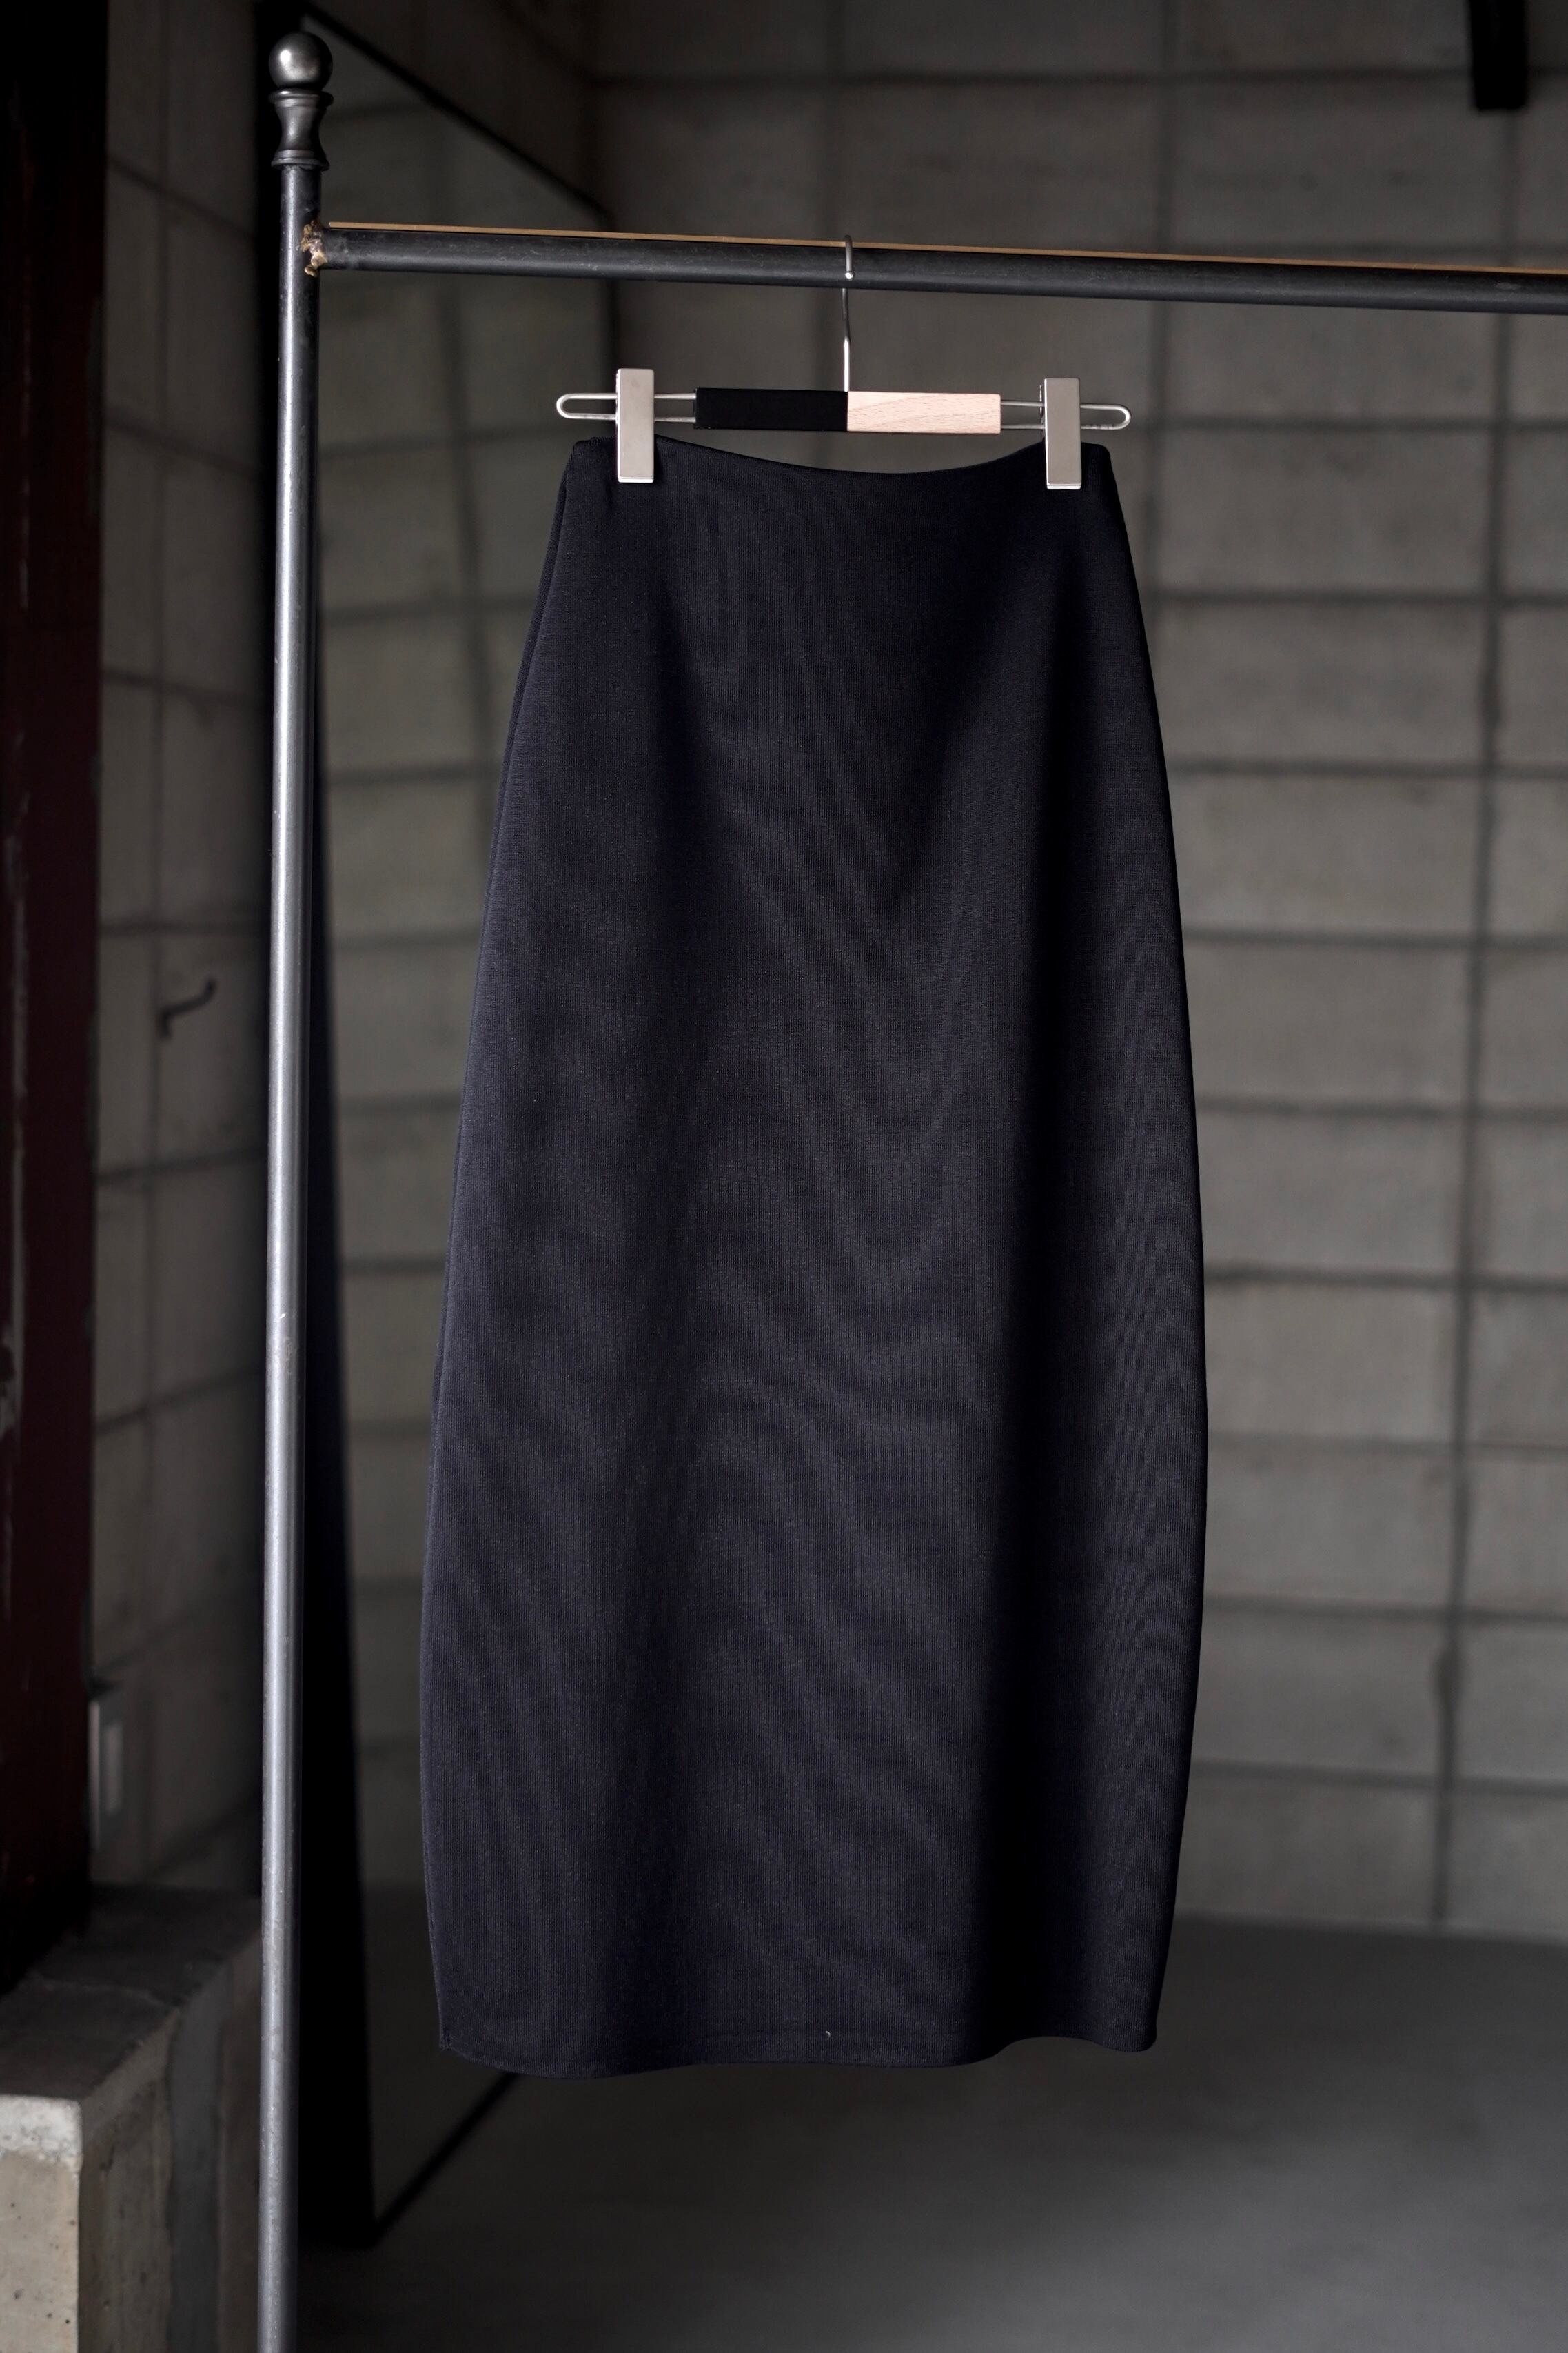 IIROT Air Knit Skirt  BLACK 021-023-KS06